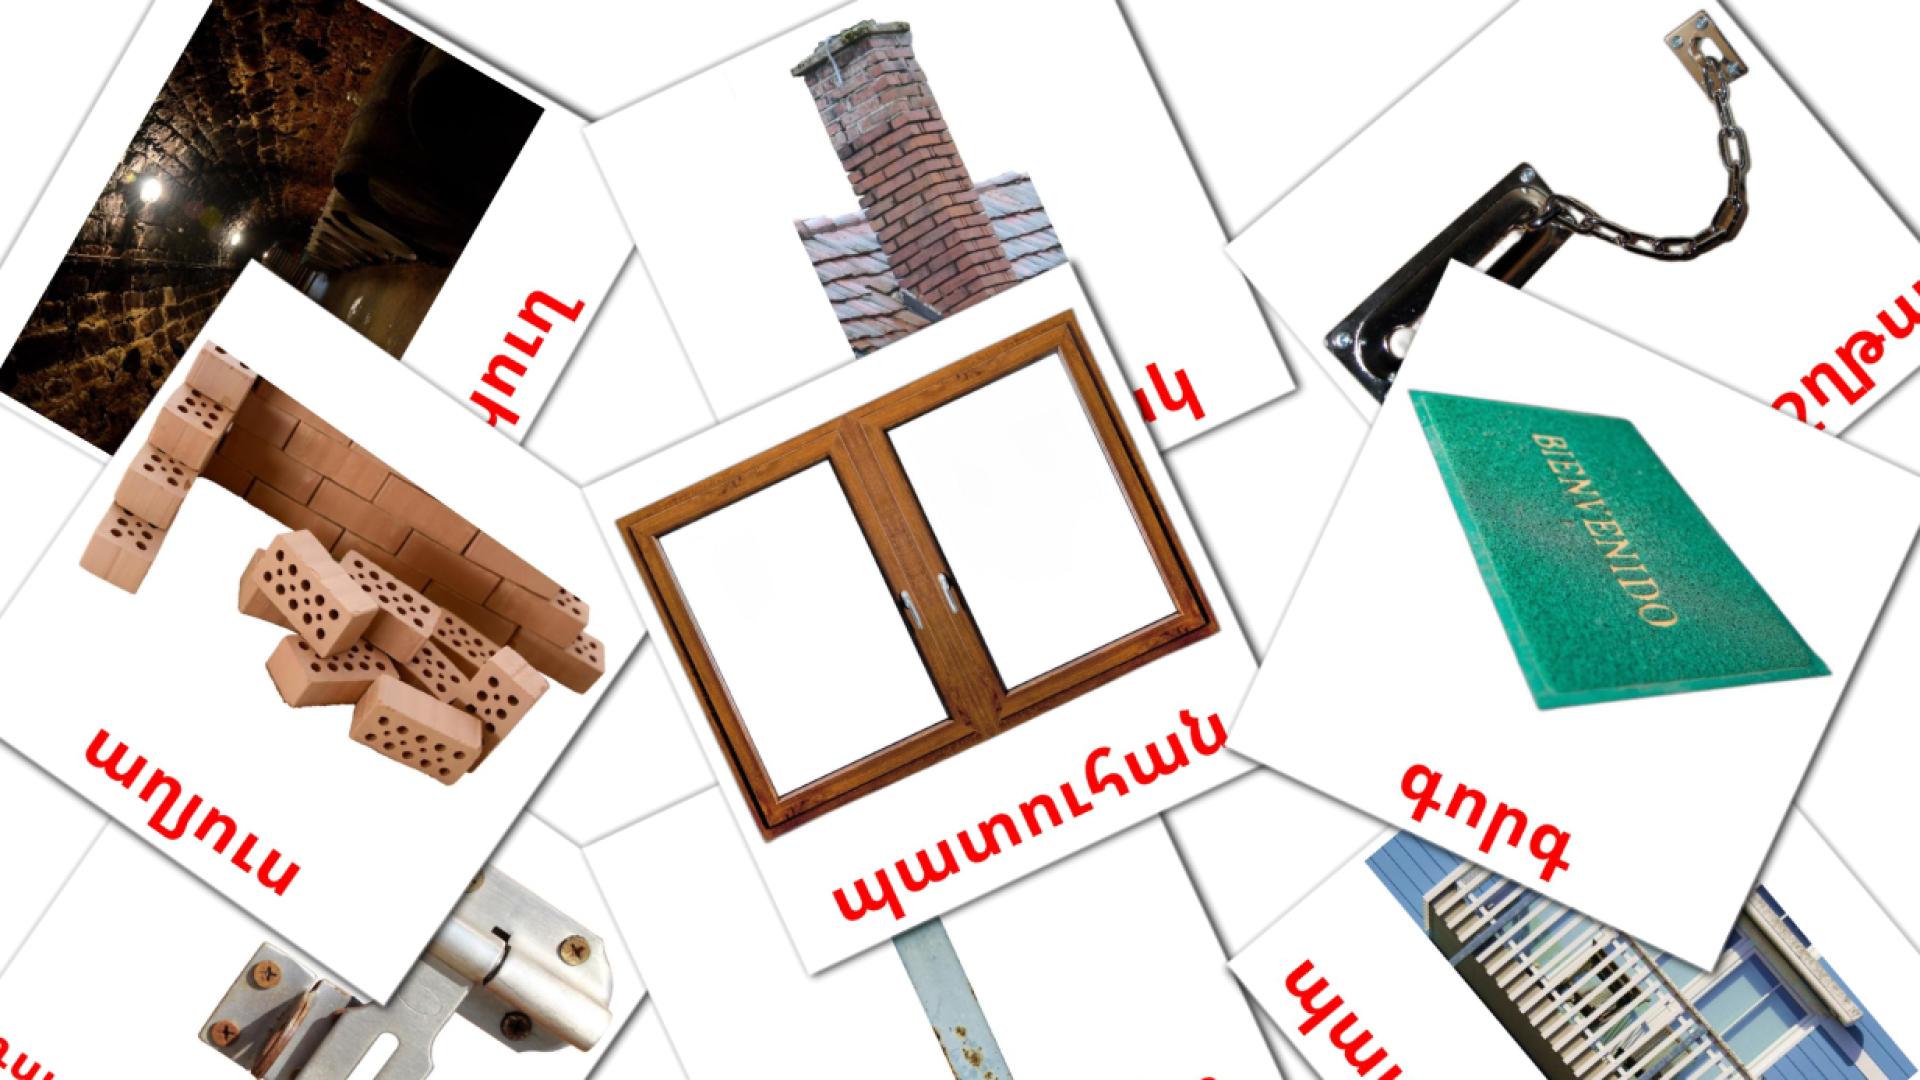 Casa - Cartões de vocabulário armênio